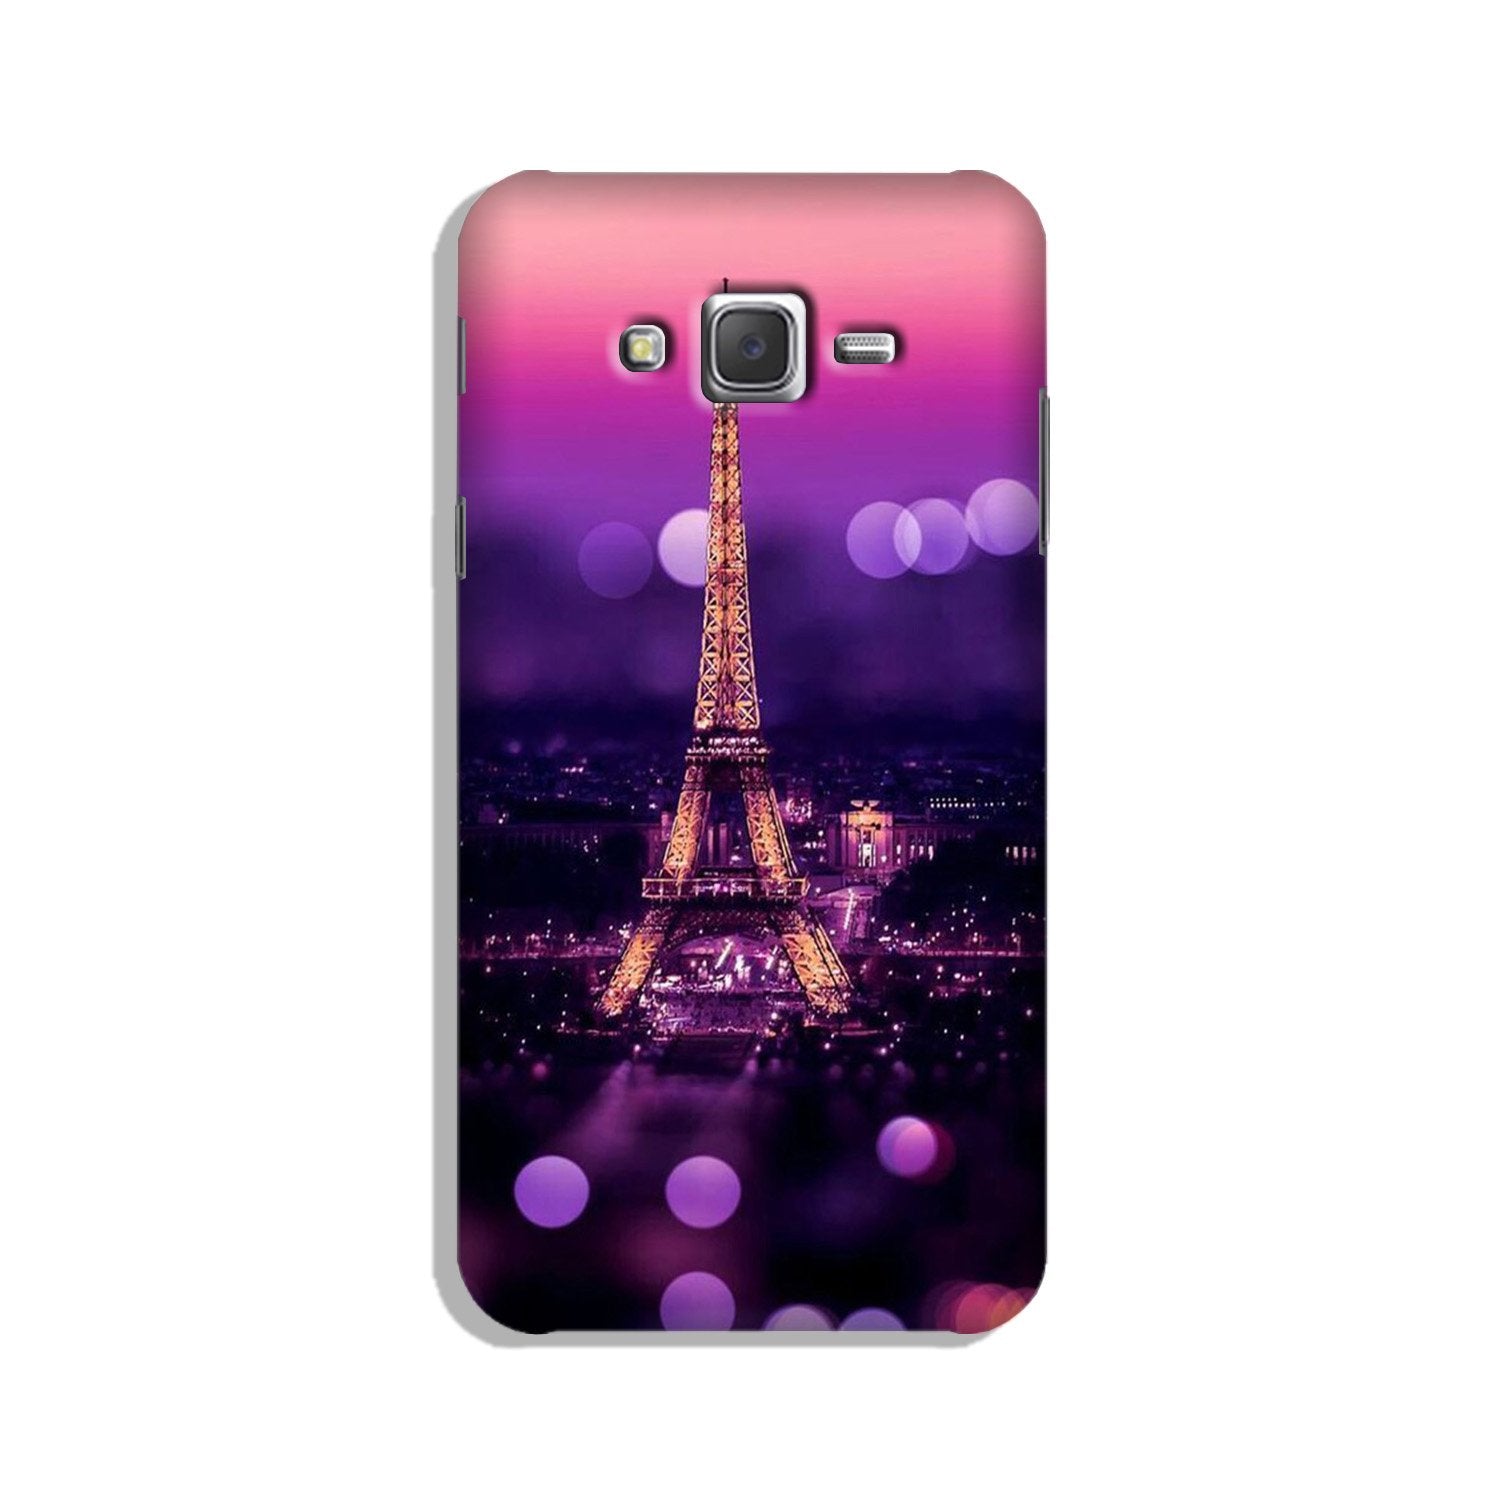 Eiffel Tower Case for Galaxy J3 (2015)